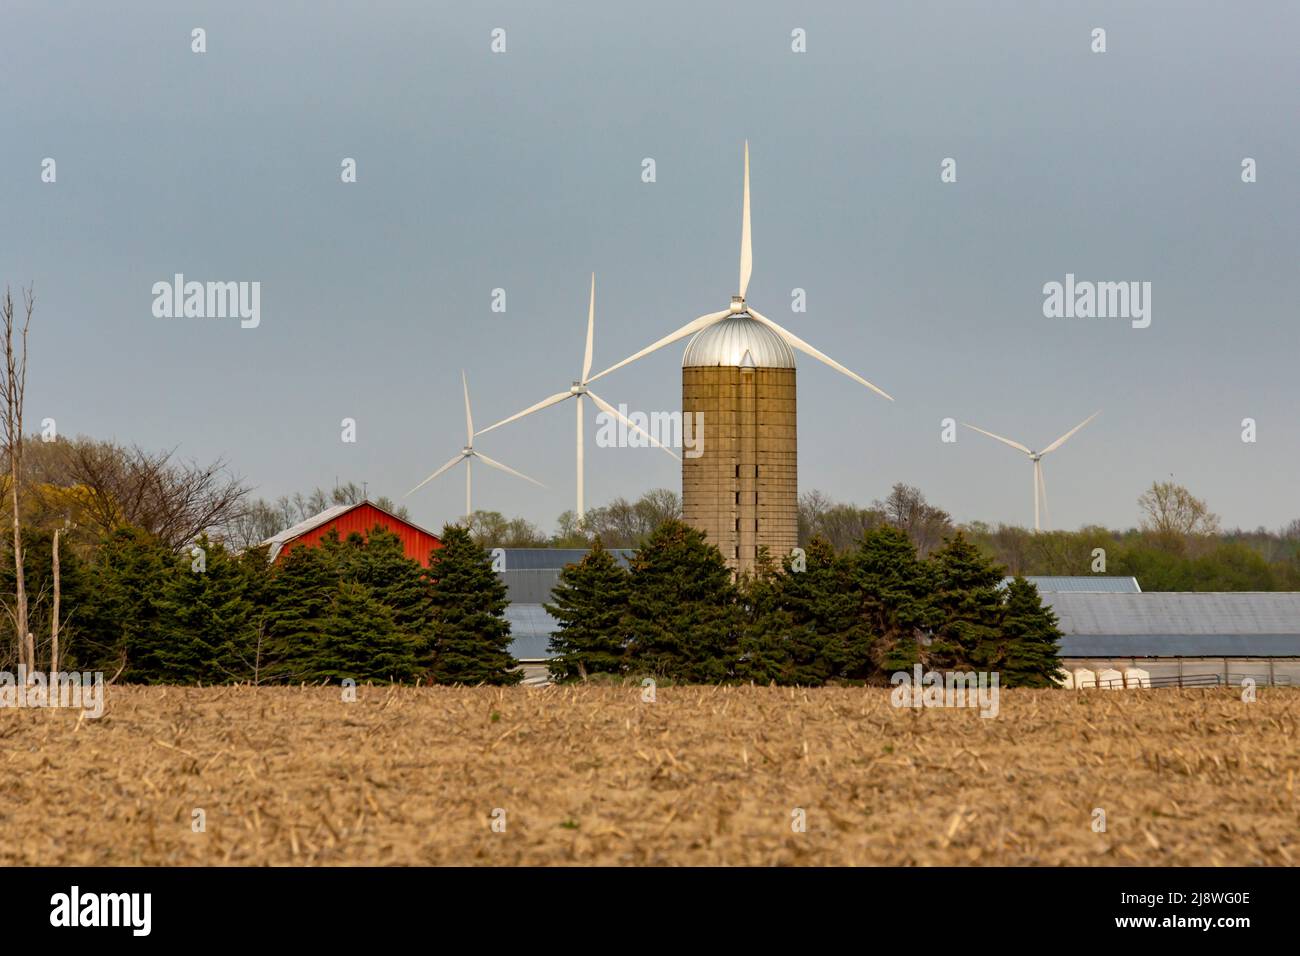 Port Austin, Michigan - Wind turbines, part of the Deerfield wind farm, on farm land in the Thumb of Michigan. Stock Photo